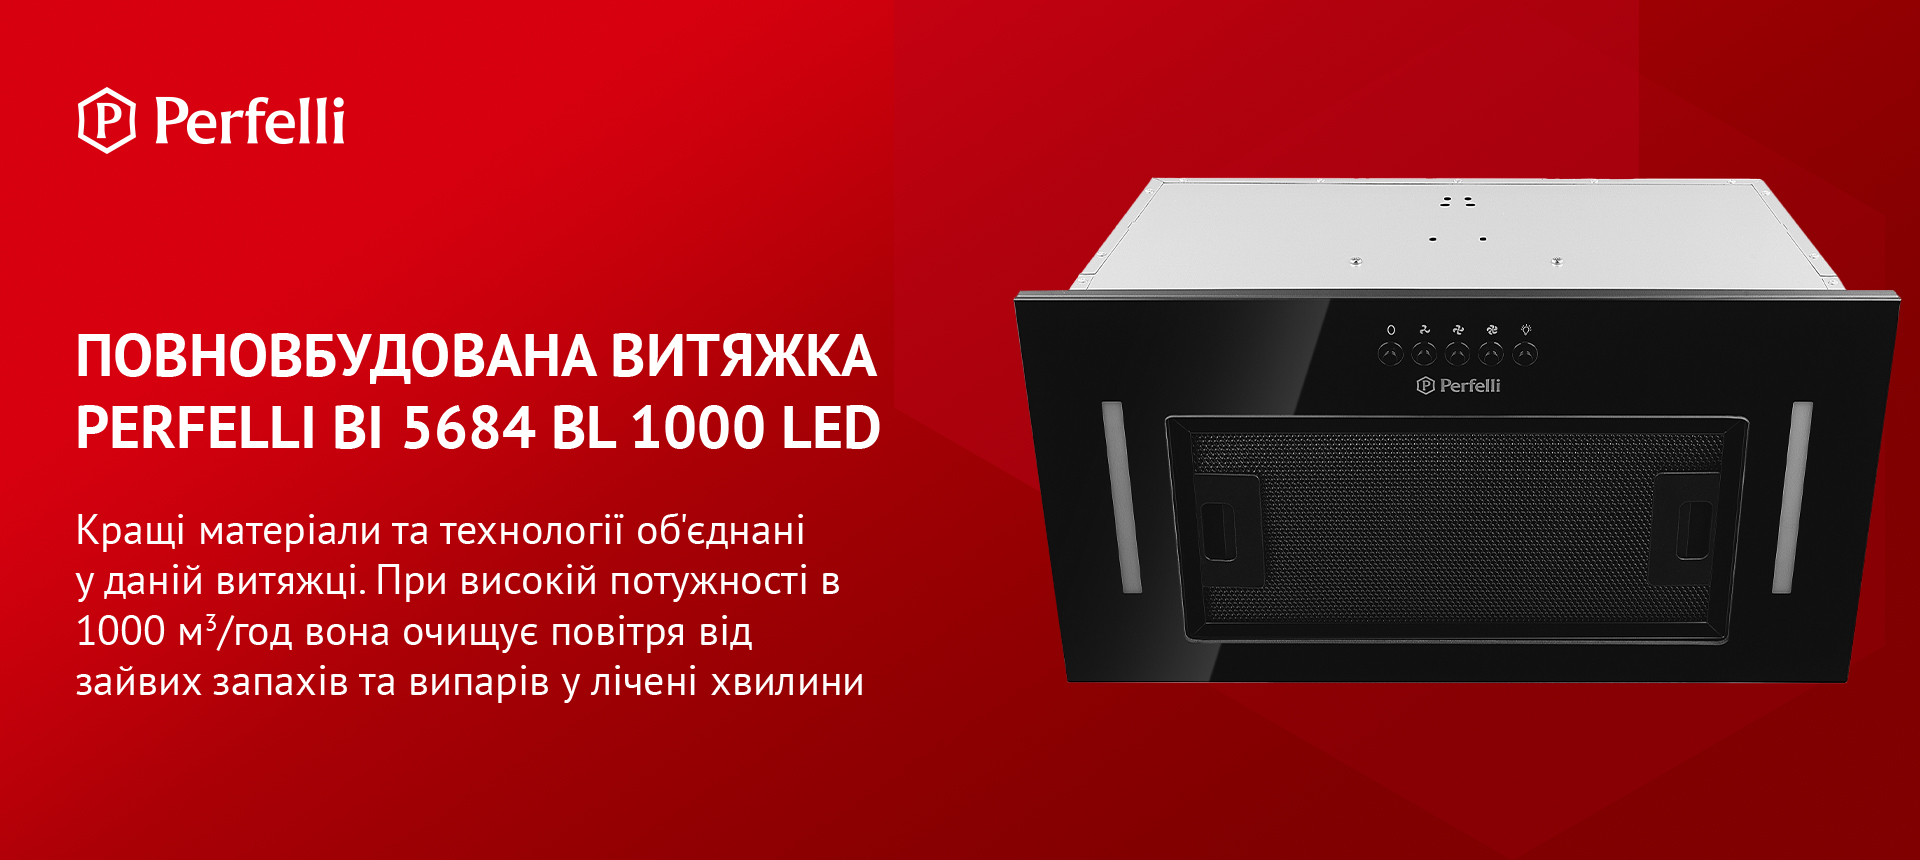 Perfelli BI 5684 BL 1000 LED в магазине в Киеве - фото 10